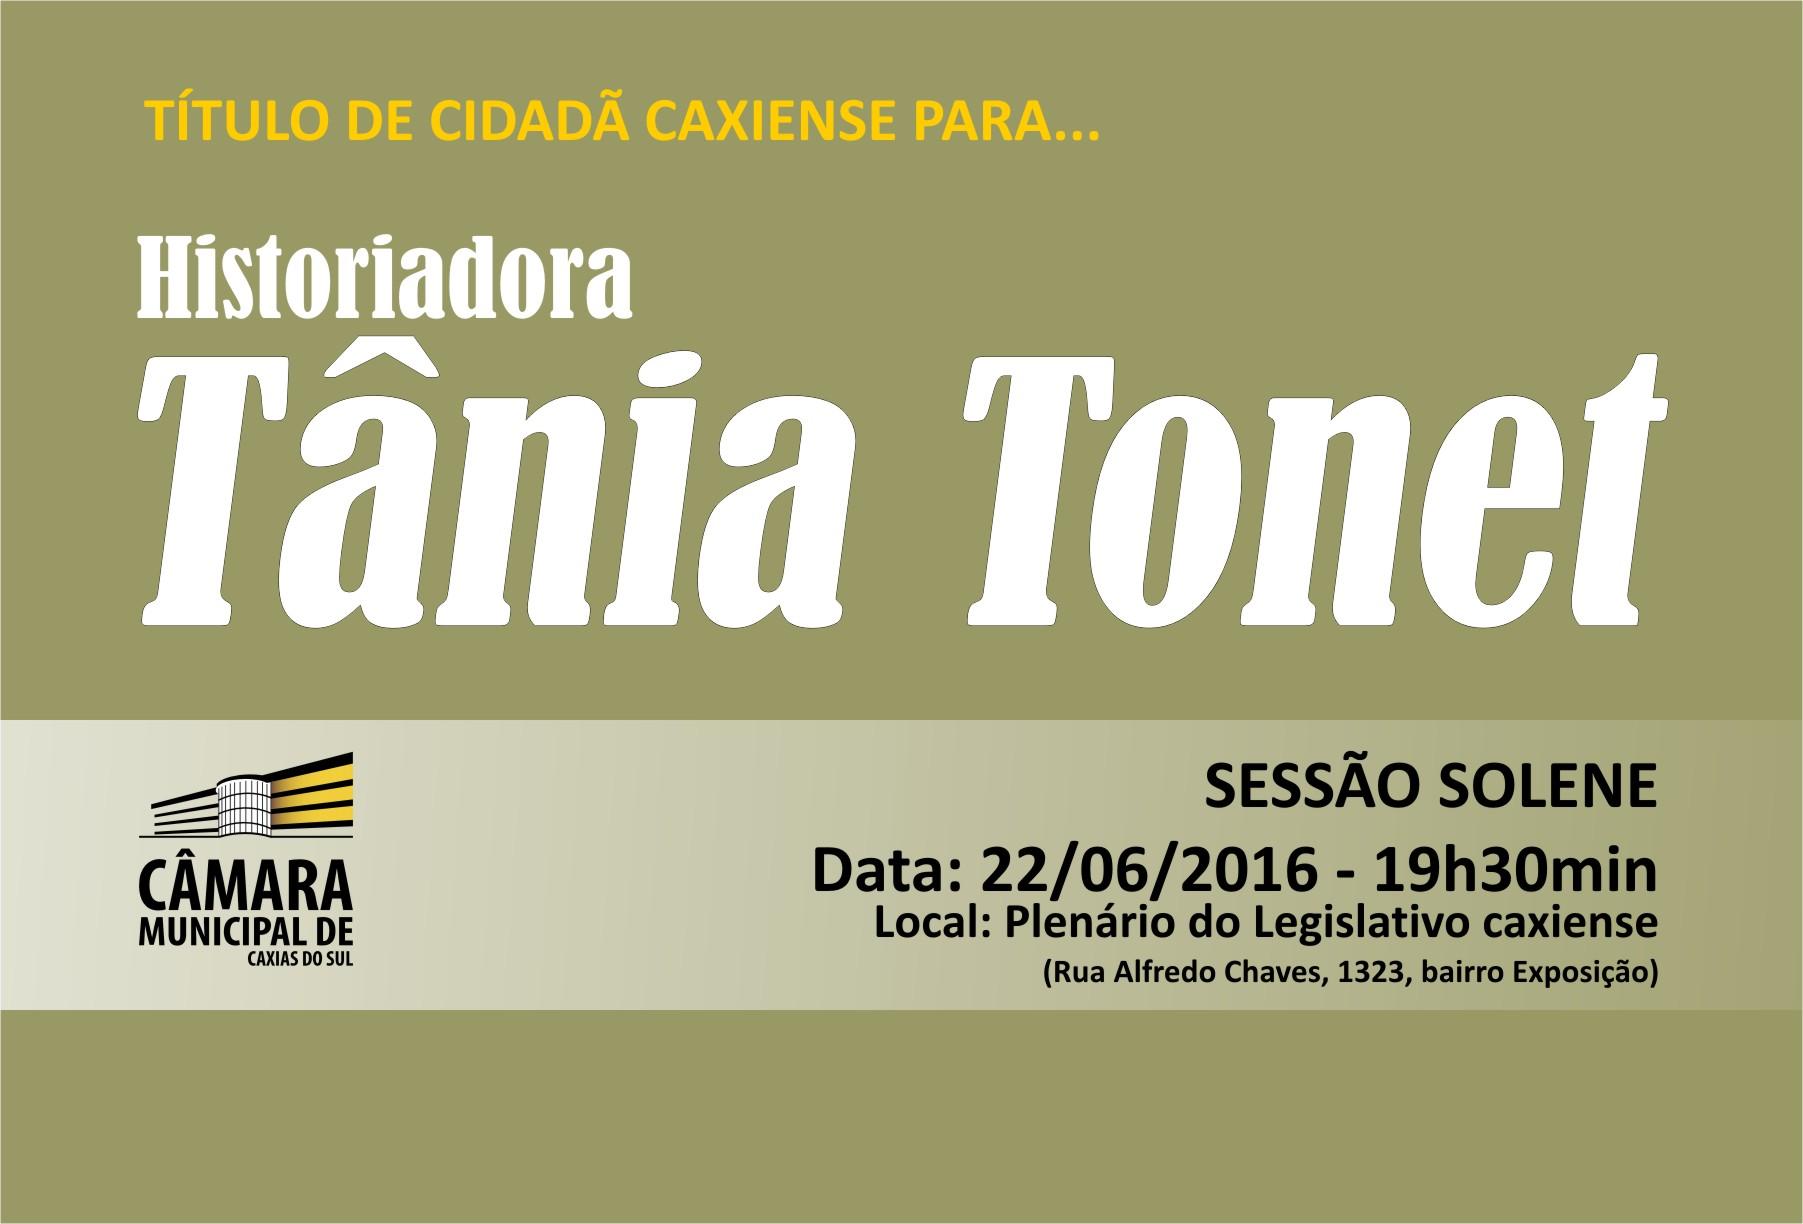 Tânia Tonet será agraciada com o Título de Cidadã Caxiense pelo Parlamento municipal